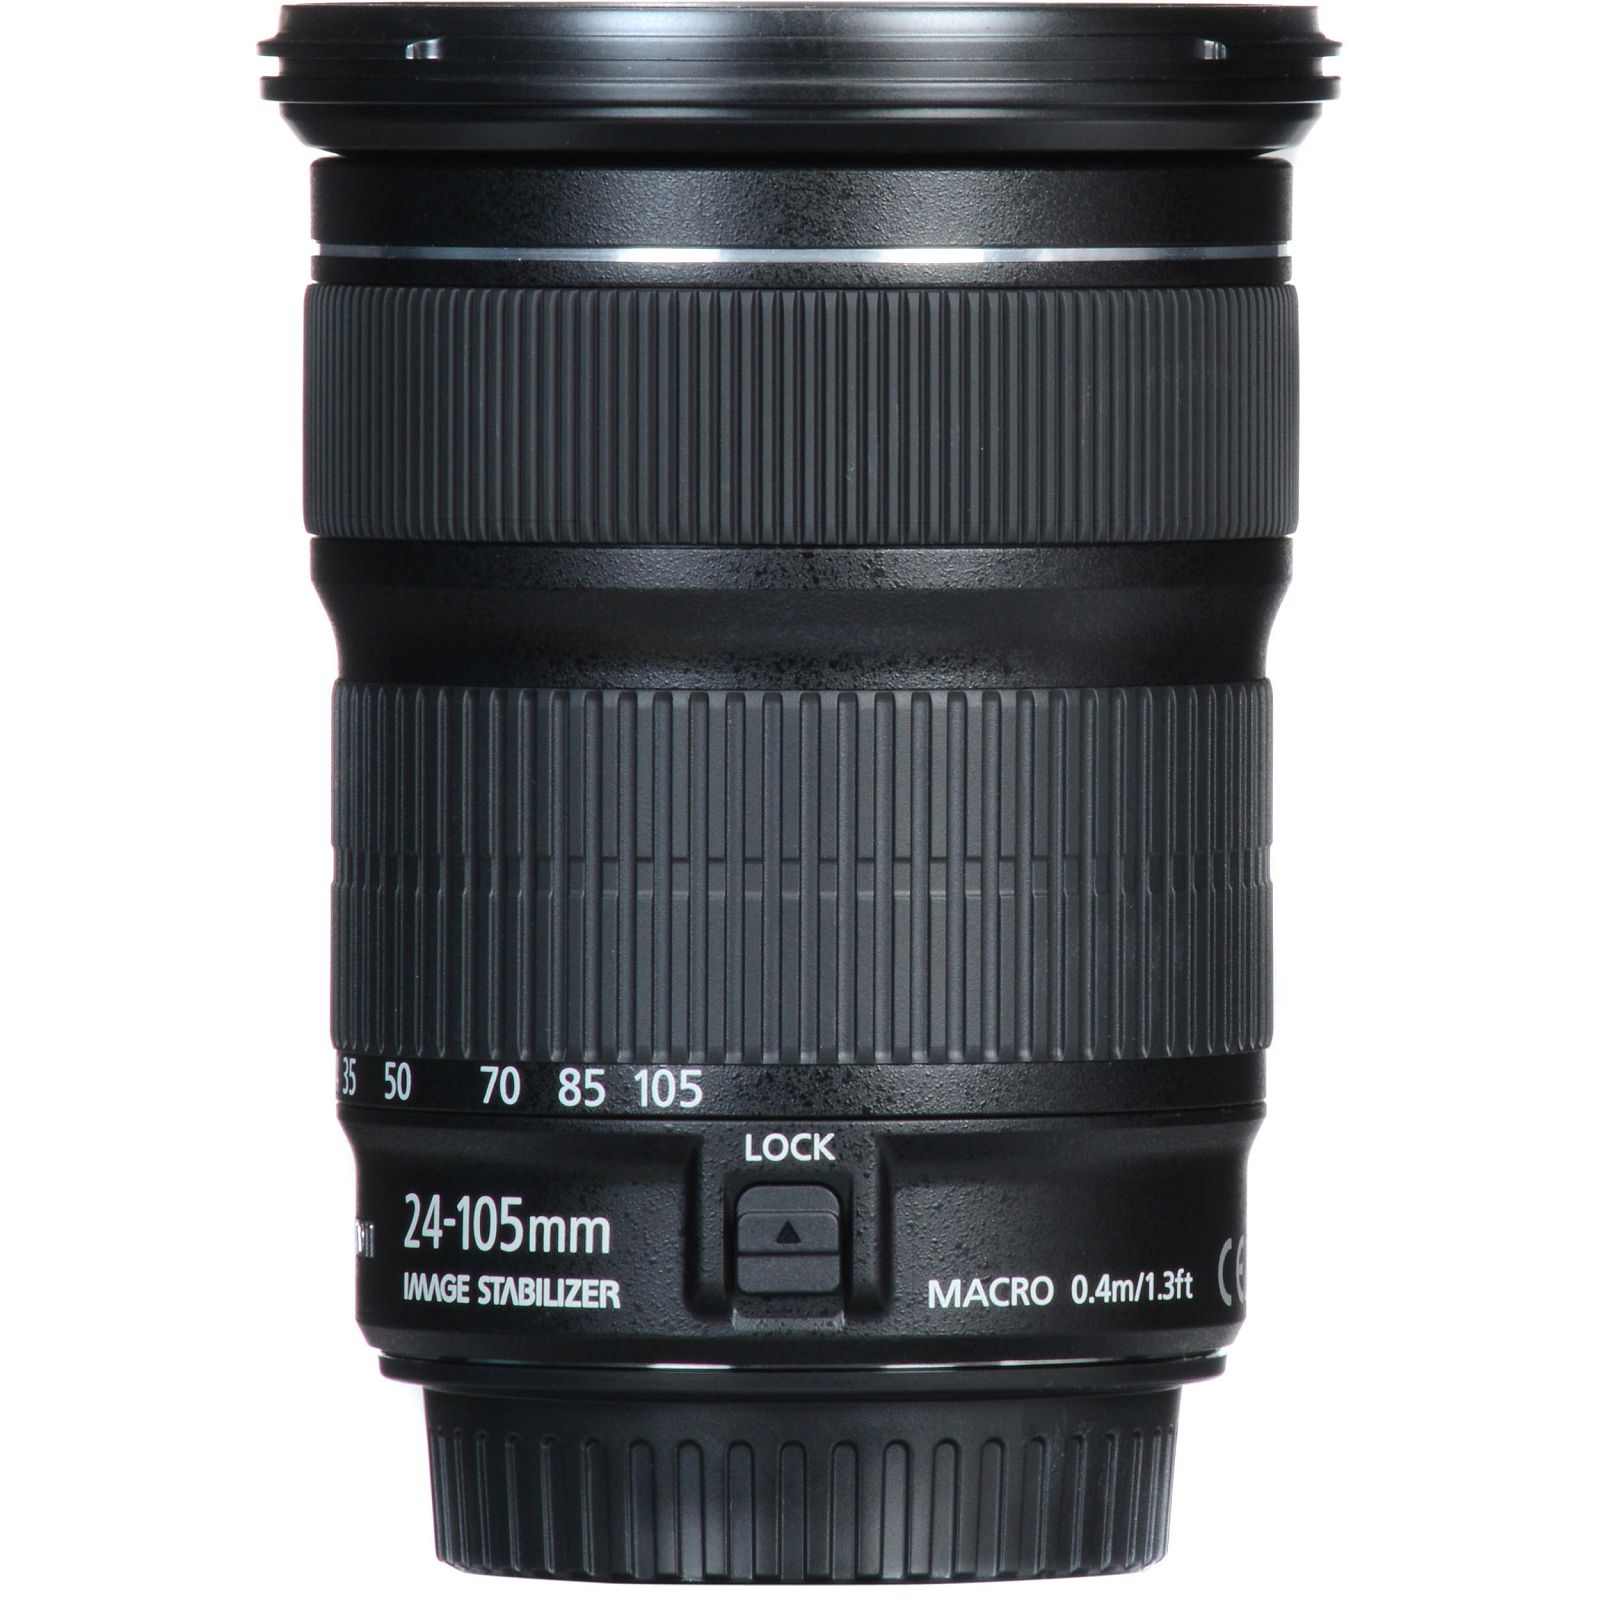 Canon EF 24-105 f/3.5-5.6 IS STM Standardni objektiv za fotoaparat 24-105mm f3.5-5.6 zoom lens (9521B005AA)